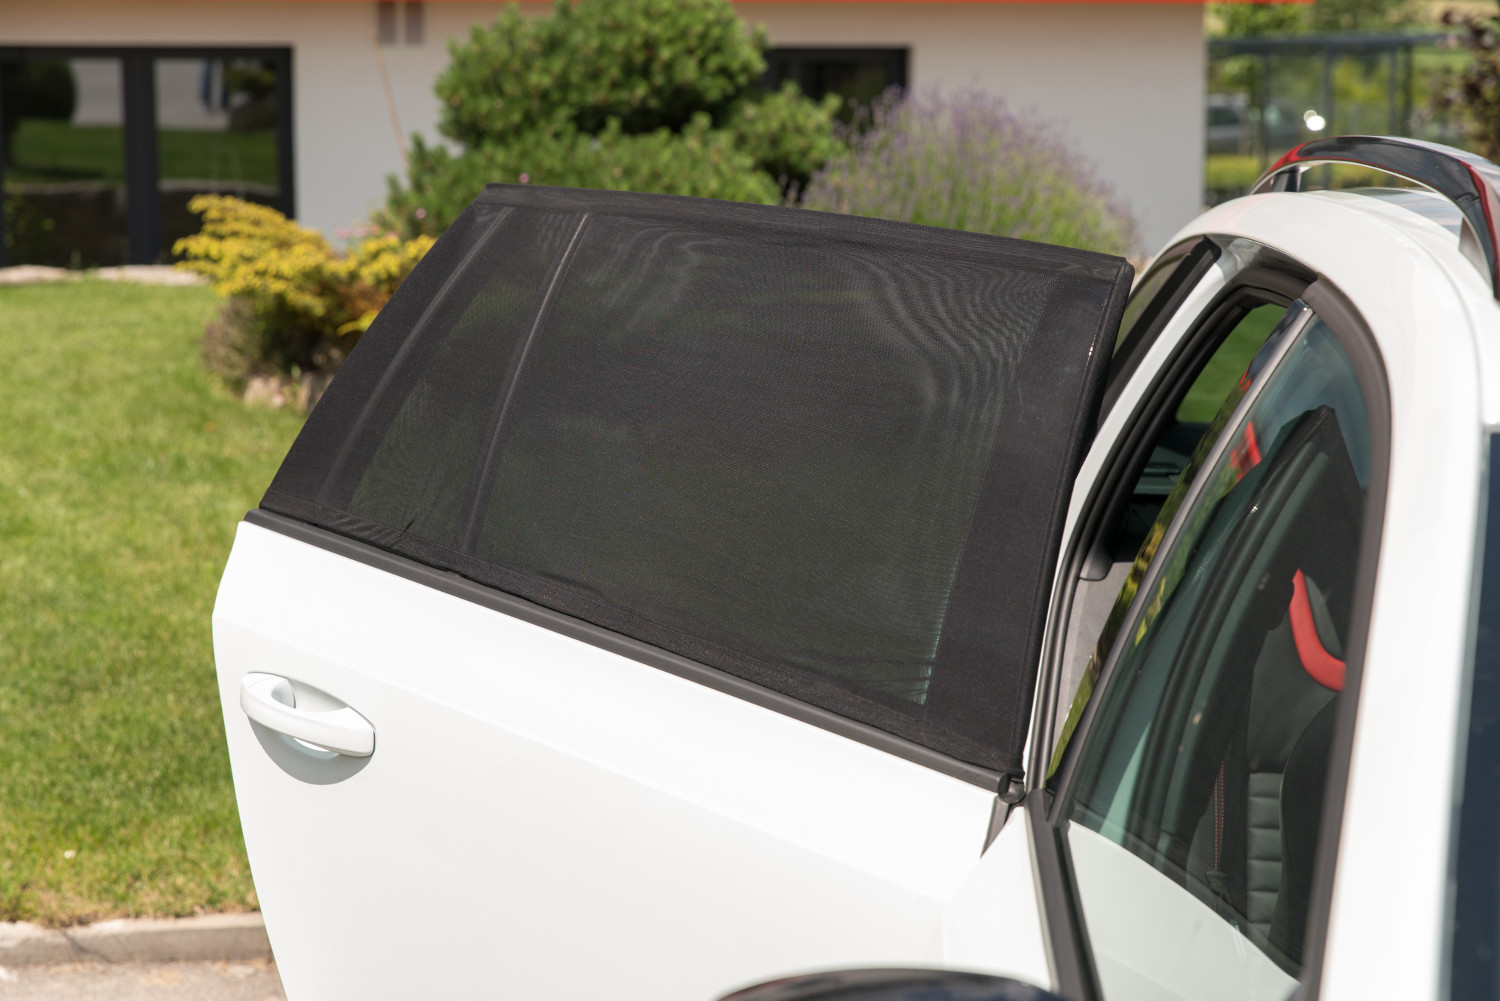 Exquisite Auto-Fliegengitter-Fenster Anti-Mücken-Abwehr Autovorhang  Auto-Fliegengitter Fahrzeug-Fensterabdeckung Seitenfenster Moskitonetz